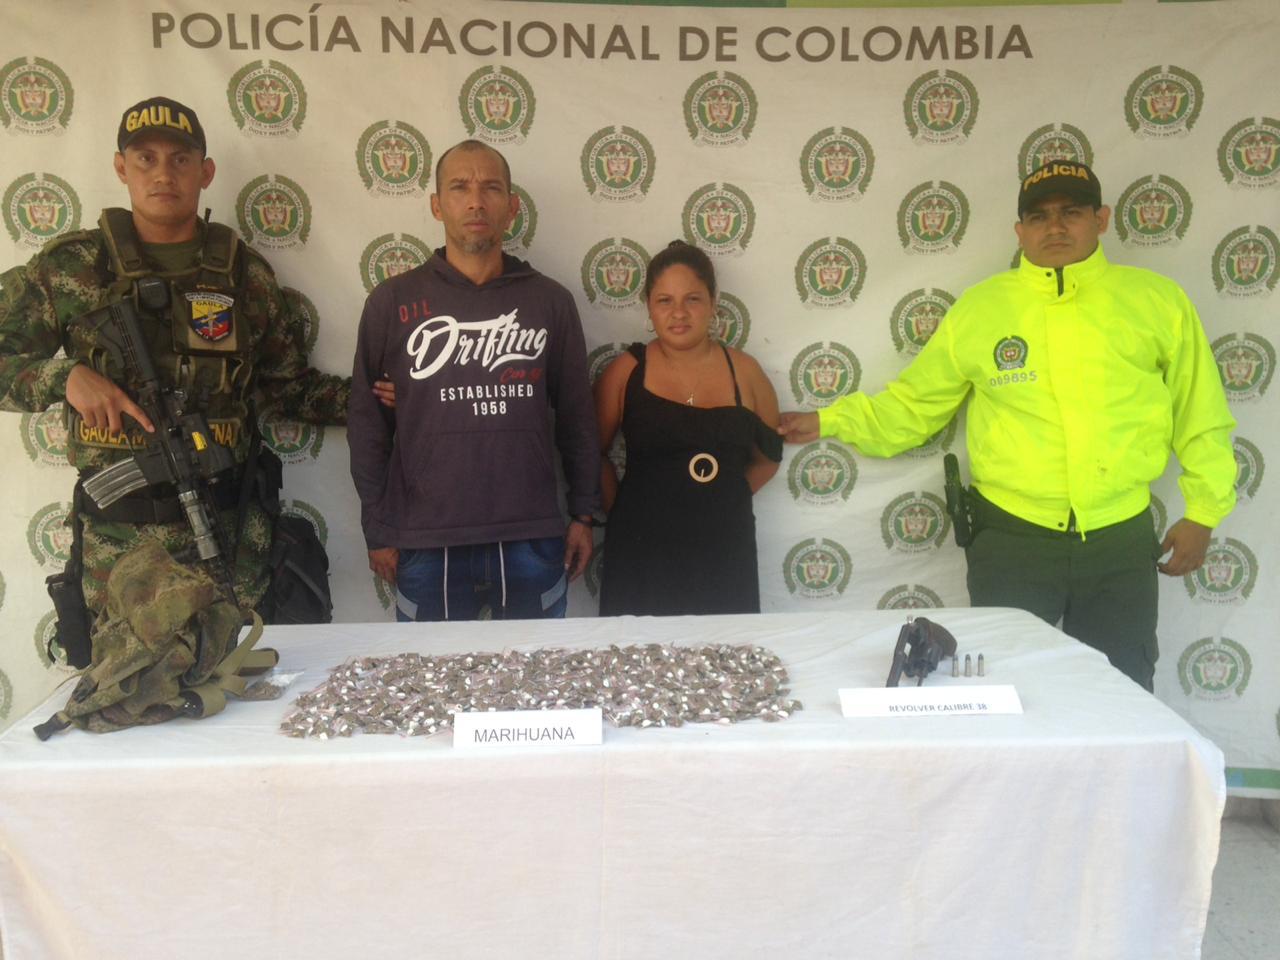 Esnaider José González Arrieta, alias ‘El Chamo’ y Angie Patricia Mendoza Fornaris, fueron capturados con droga y un arma de fuego sin documentos.